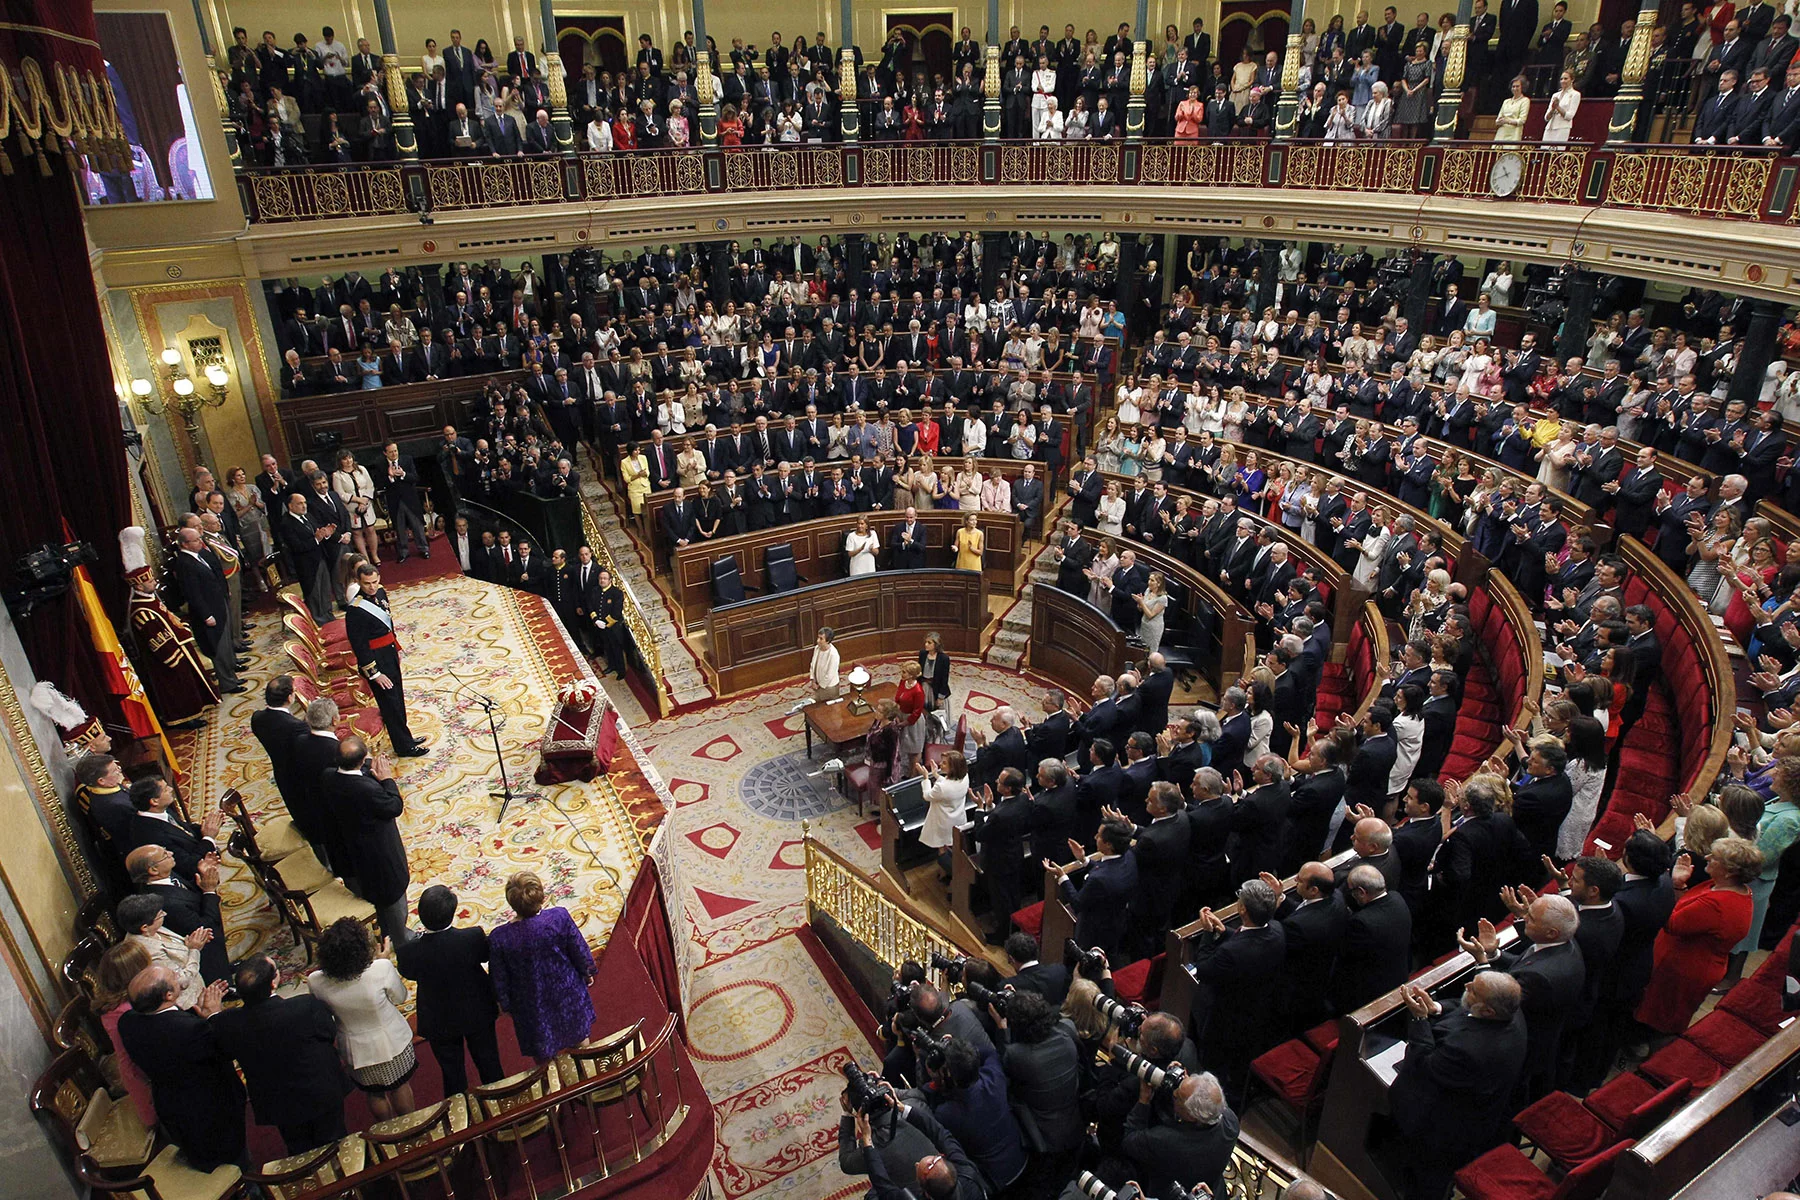 Interior view of the Congreso de los Diputados in Madrid, Spain